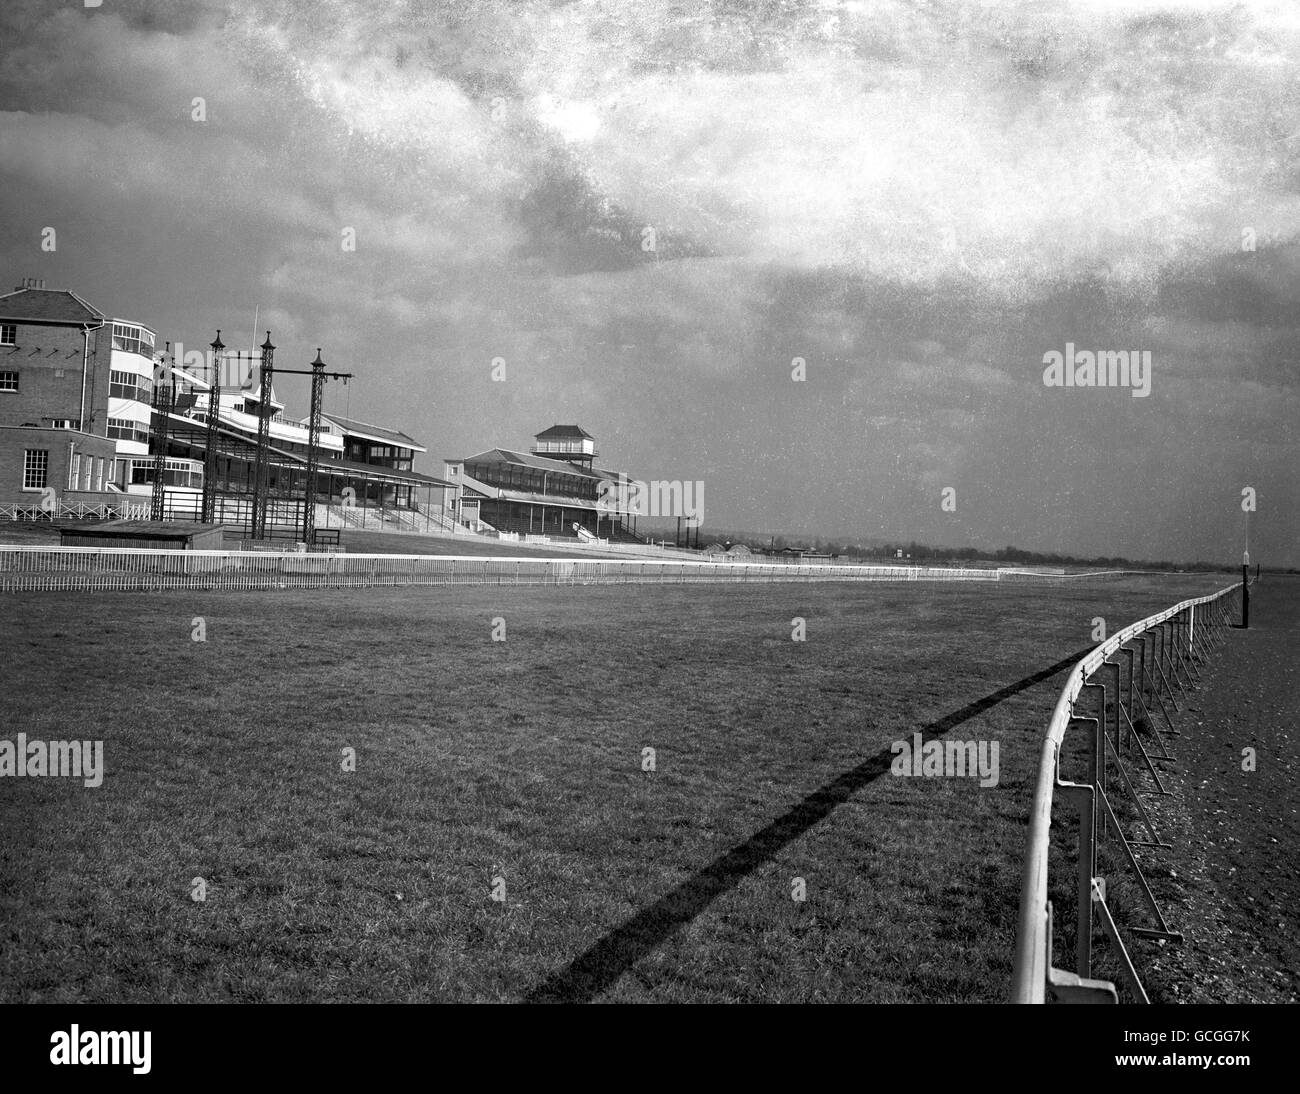 Newbury Racecourse bereit für die Wiedereröffnung - 1949. Gesamtansicht der Tribünen und der neu verlegten, gedeckten Strecke Stockfoto